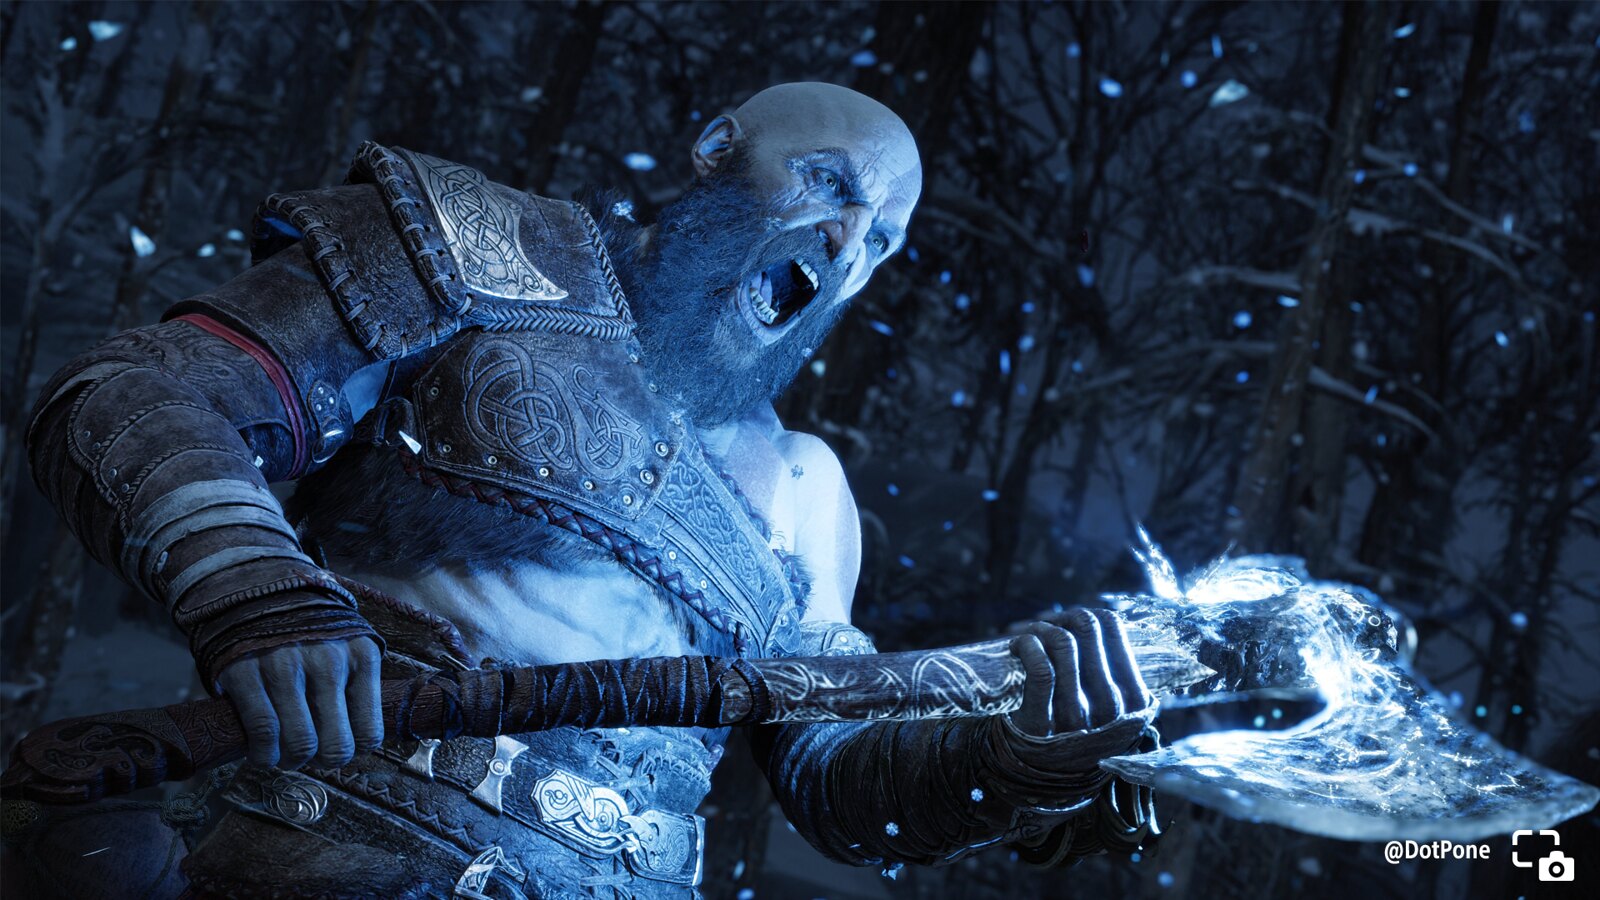 Kratos brutale, location favolose e scatti colorati: il blog di PlayStation ha pubblicato le migliori foto scattate dai giocatori in God of War Ragnarok-2